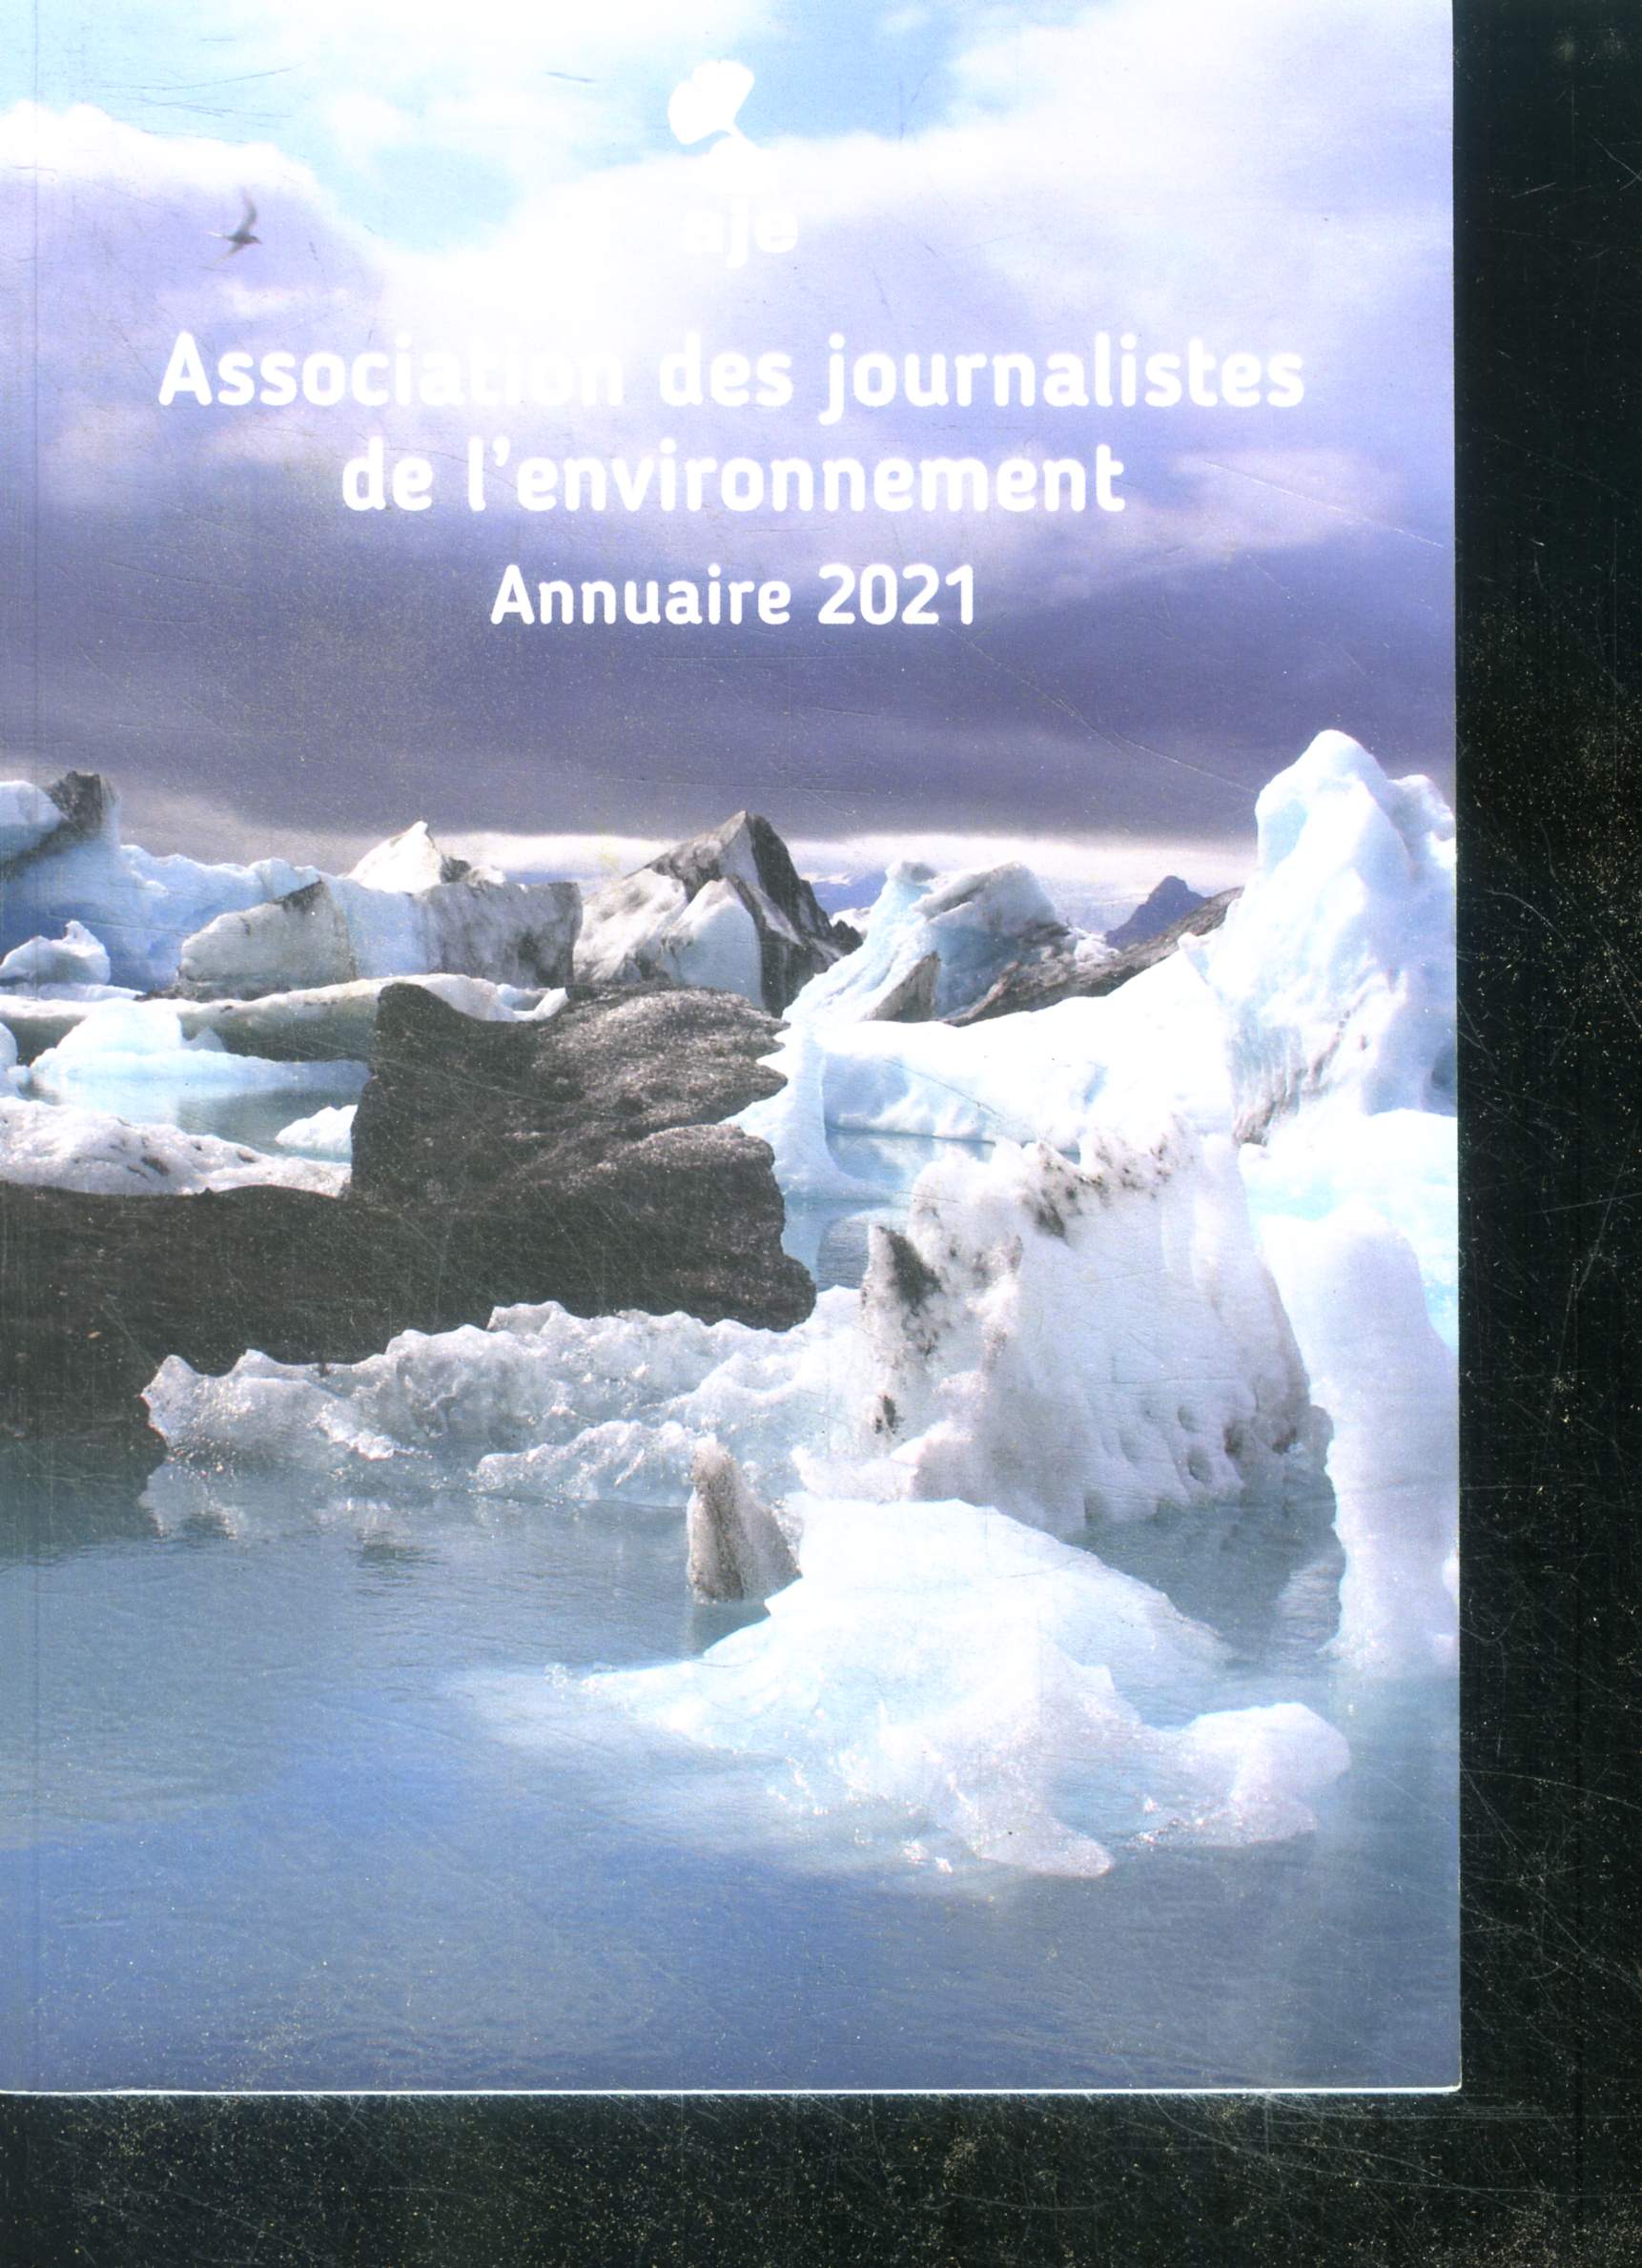 Association des journalistes de l'environnement annuaire 2021 + carte professionnelle de 